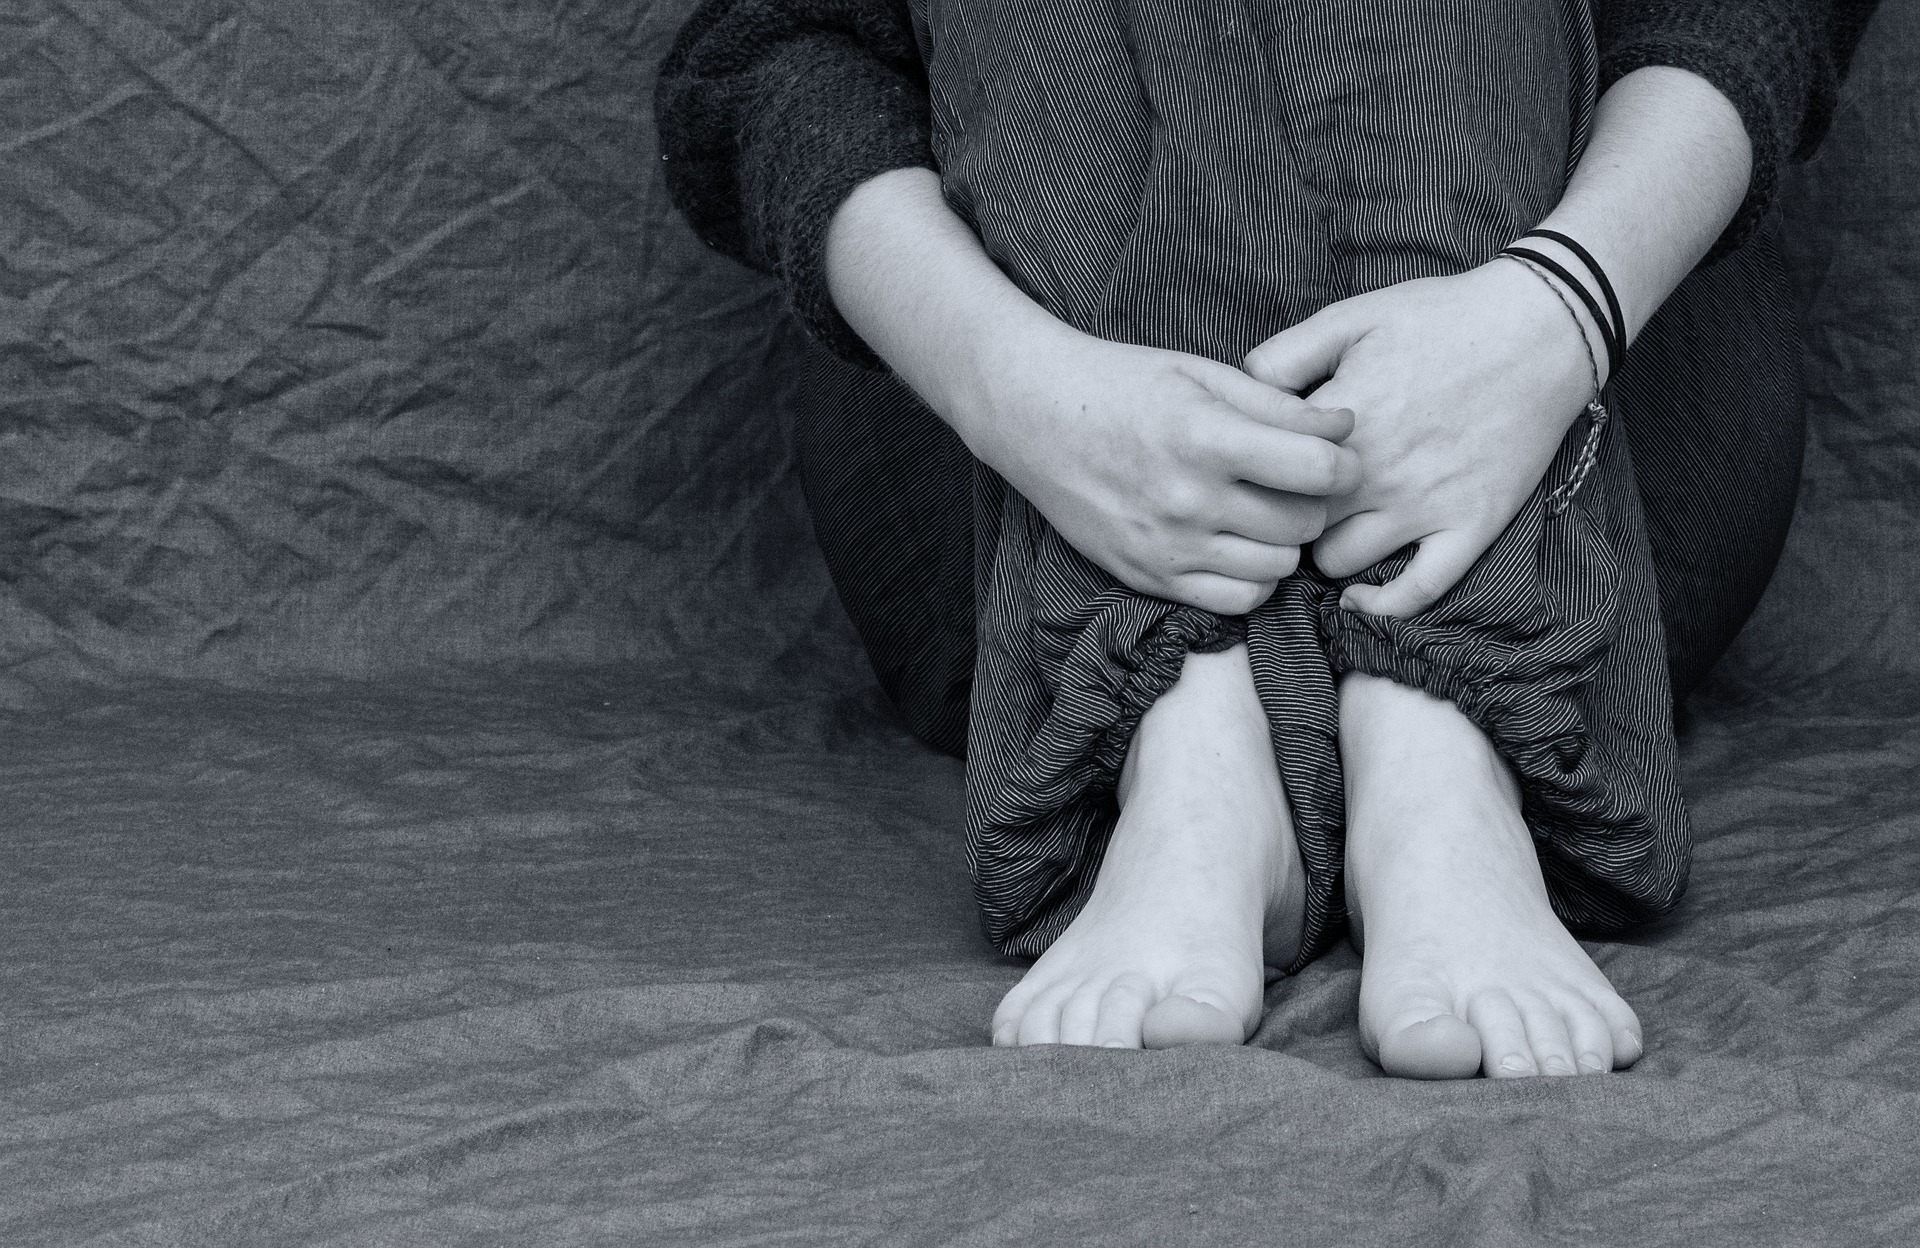 Дитяча проституція в Черкасах. Чому діти торгують власним тілом